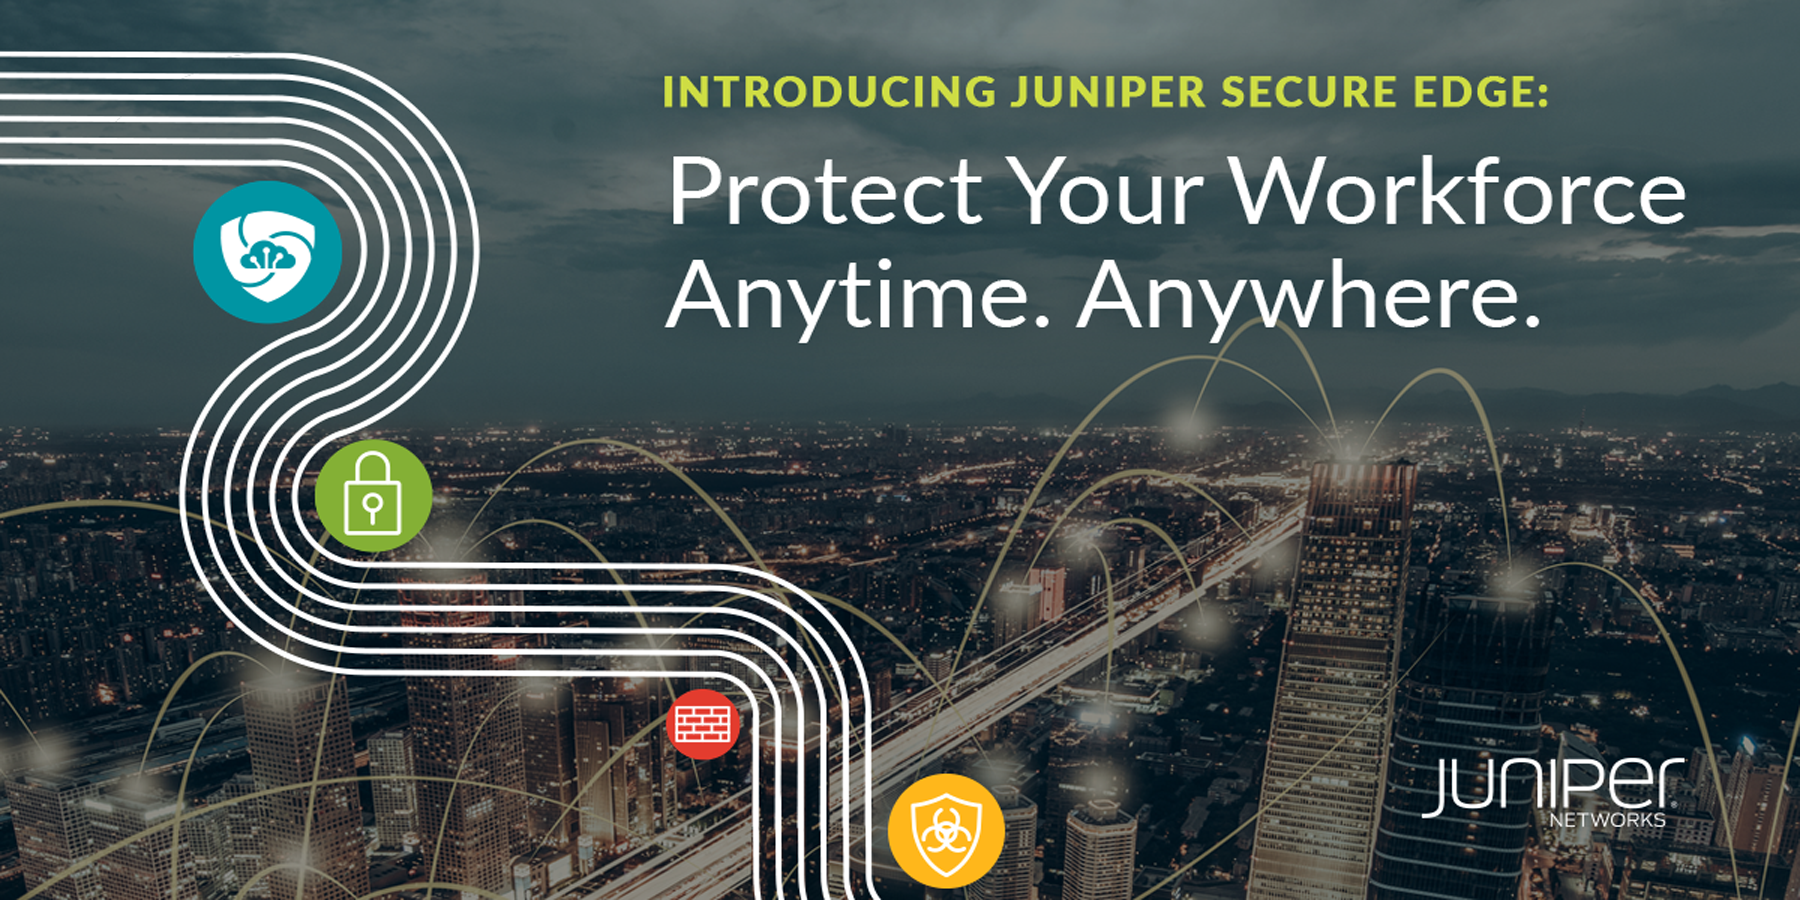 Juniper simplifiziert die SASE-Migration mit neuen, Cloud-basierten Firewall-Services zum umfassenden Schutz aller Mitarbeitenden jederzeit und an jedem Standort